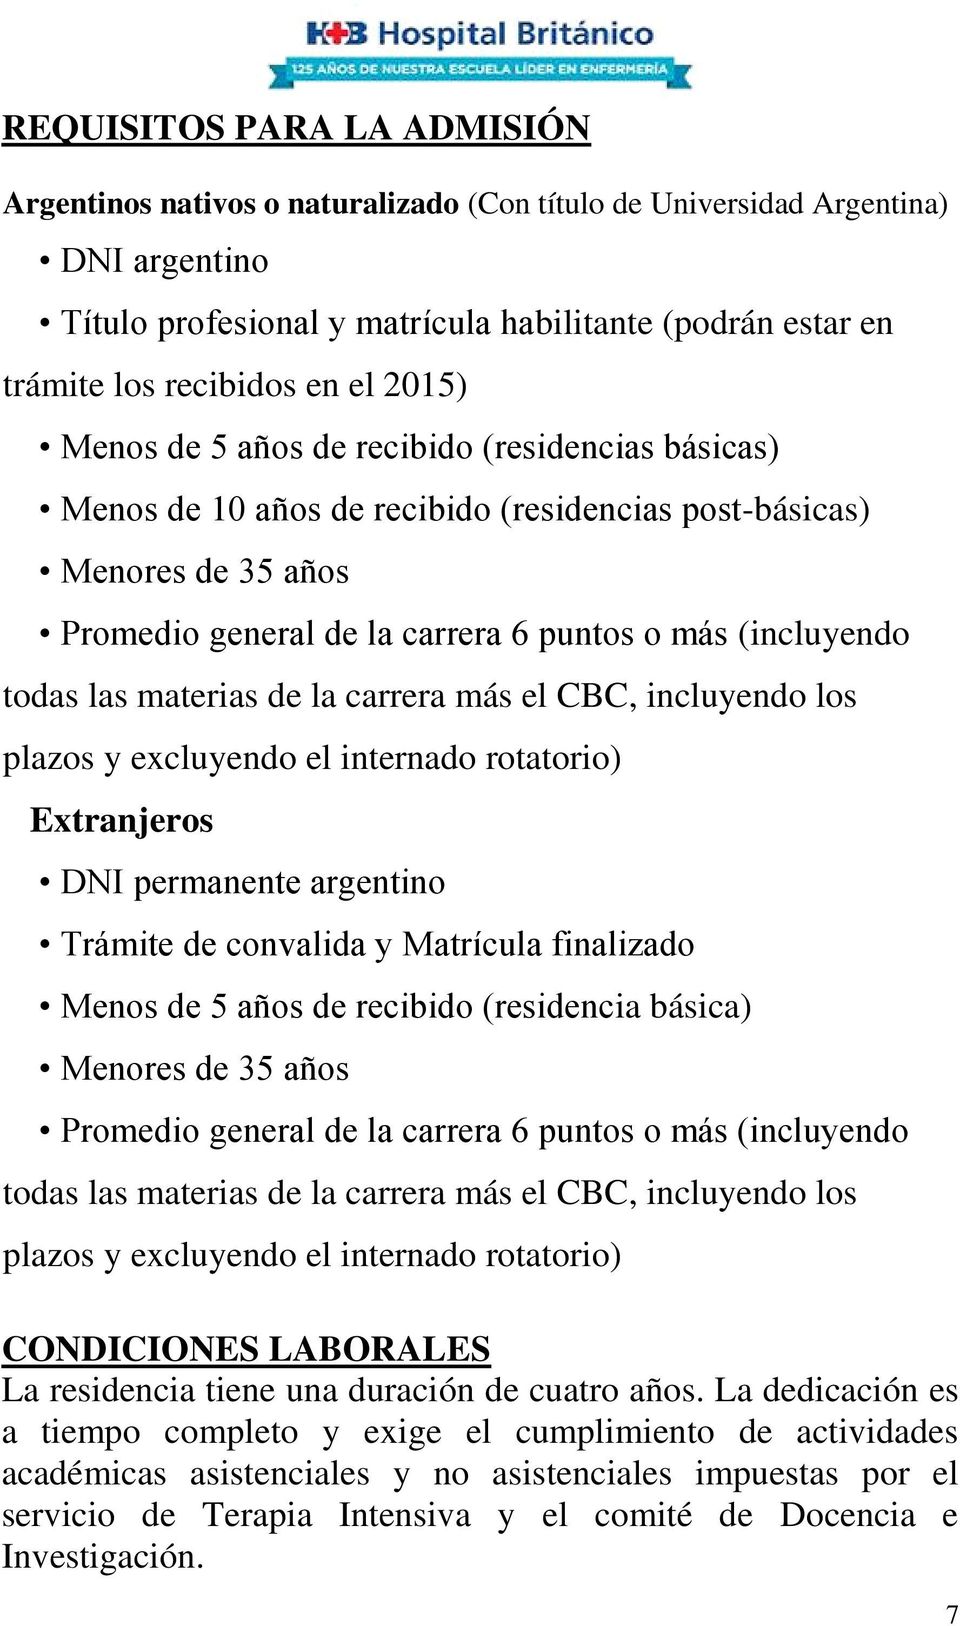 las materias de la carrera más el CBC, incluyendo los plazos y excluyendo el internado rotatorio) Extranjeros DNI permanente argentino Trámite de convalida y Matrícula finalizado Menos de 5 años de